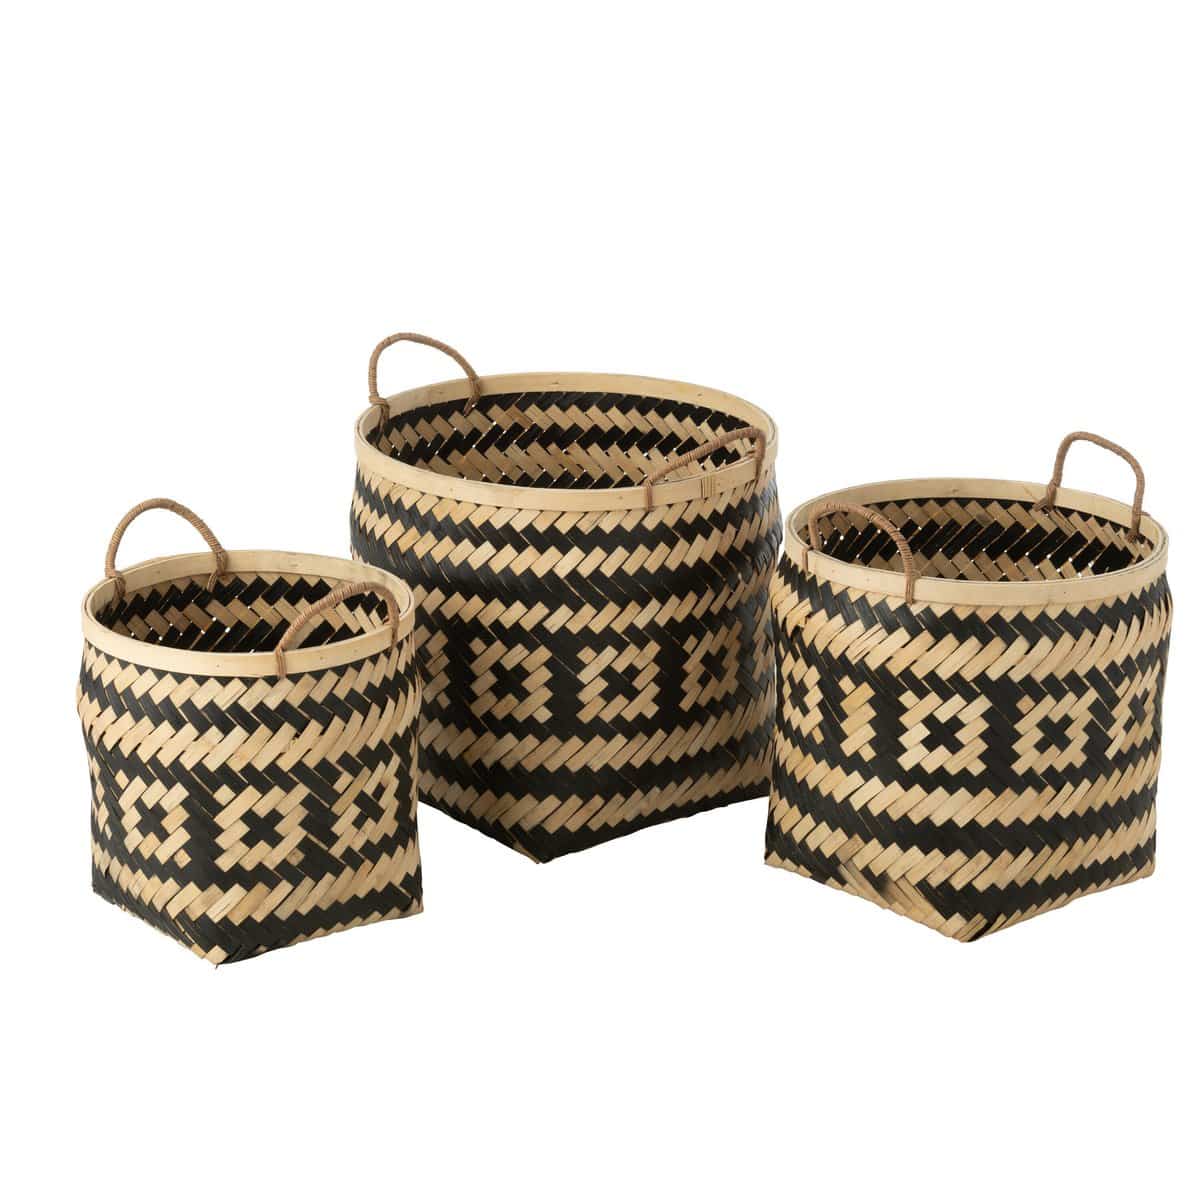 J-Line Set Of 3 Basket Patterns Handles Bamboo Natural/Black